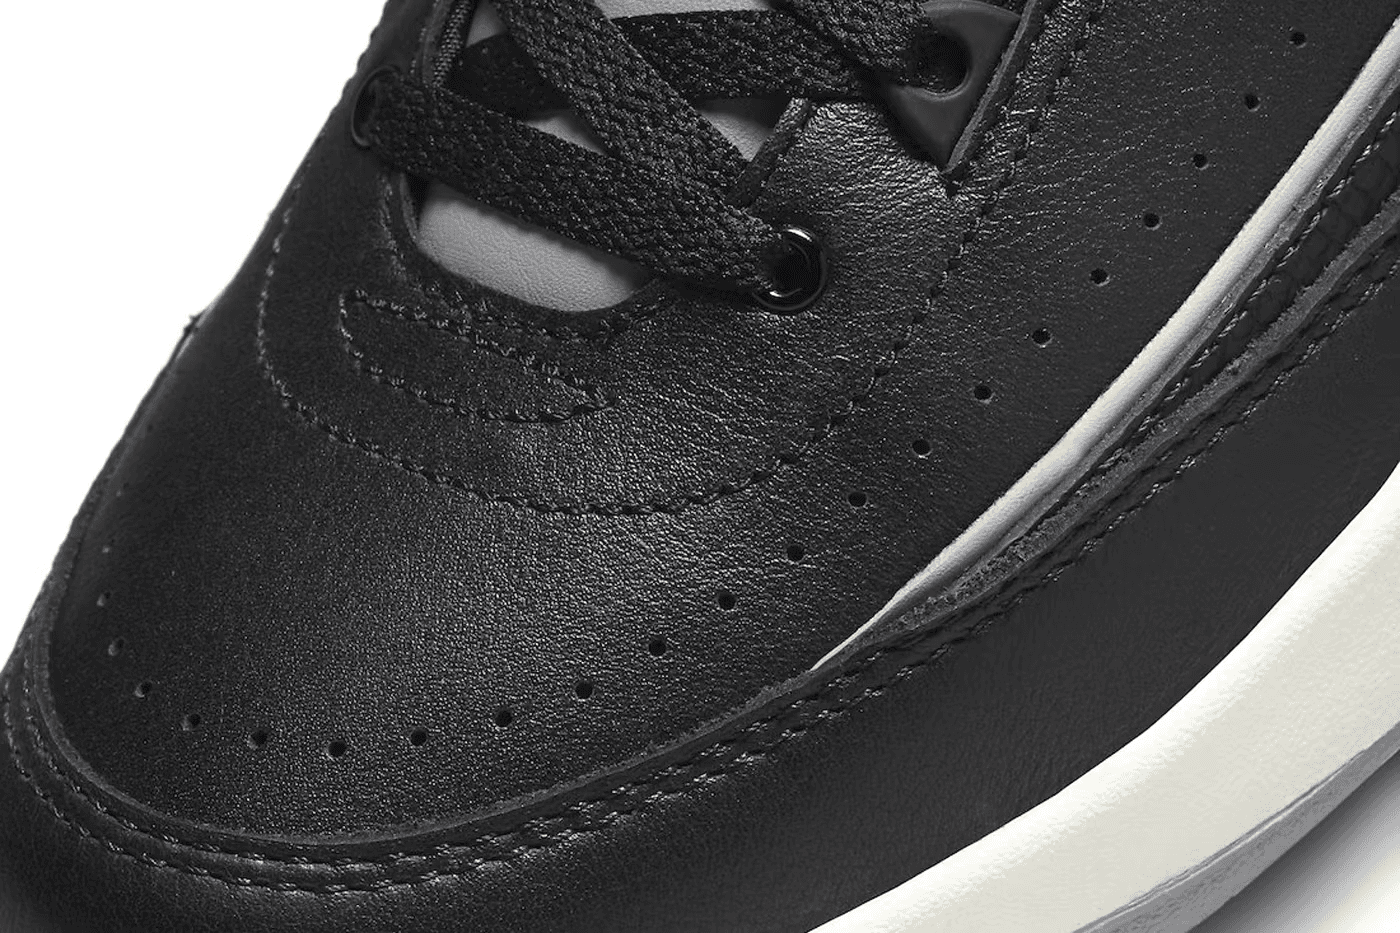 The Air Jordan 2 “Black Cement” detail neus